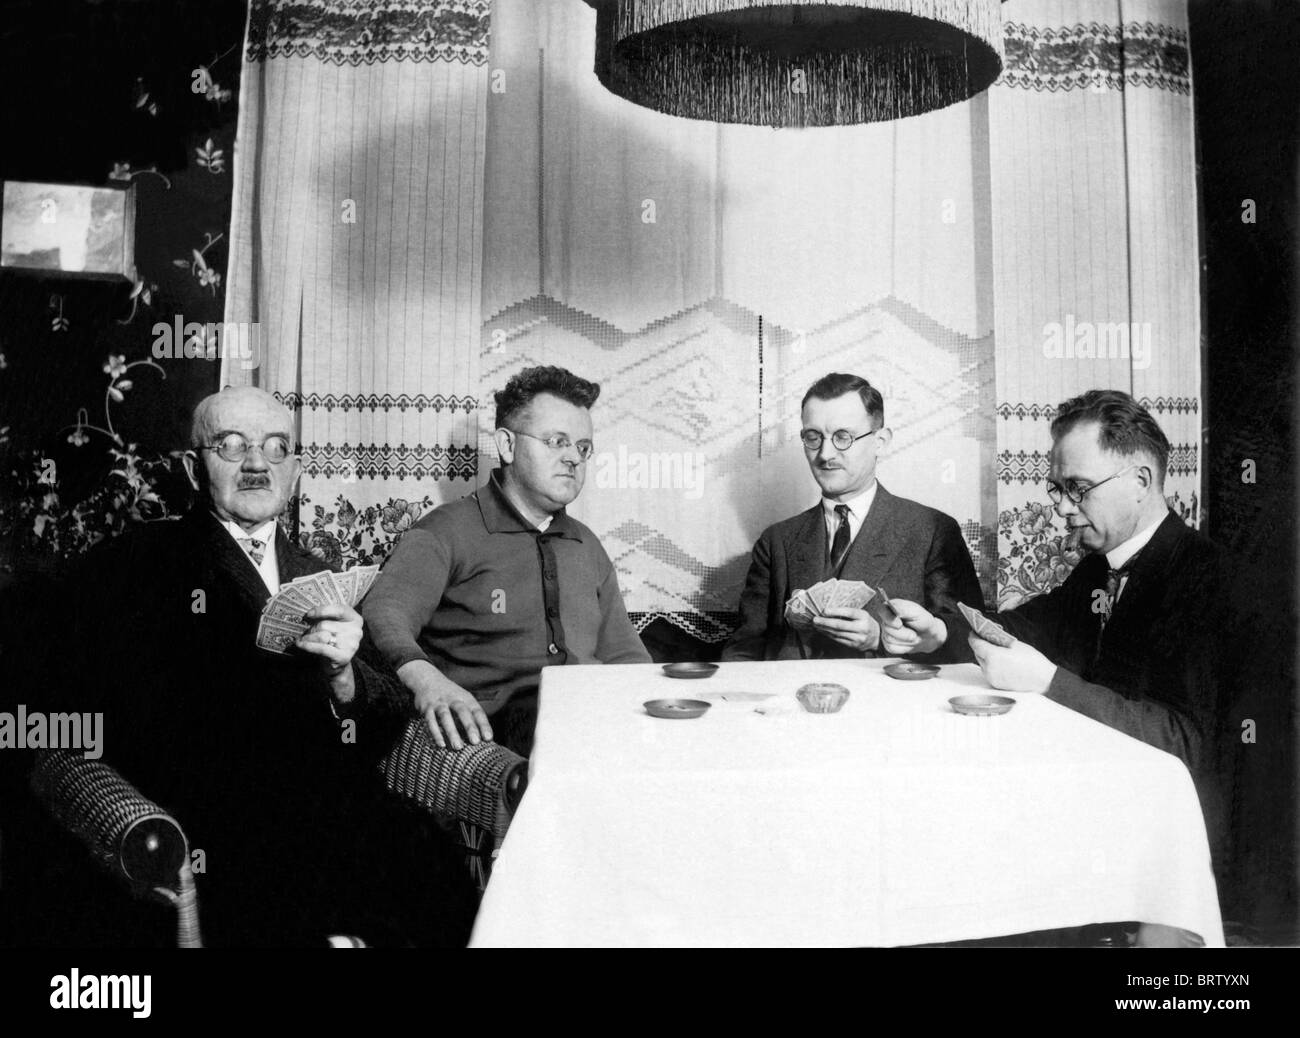 Gli uomini le carte da gioco, immagine storica, ca. 1930 Foto Stock